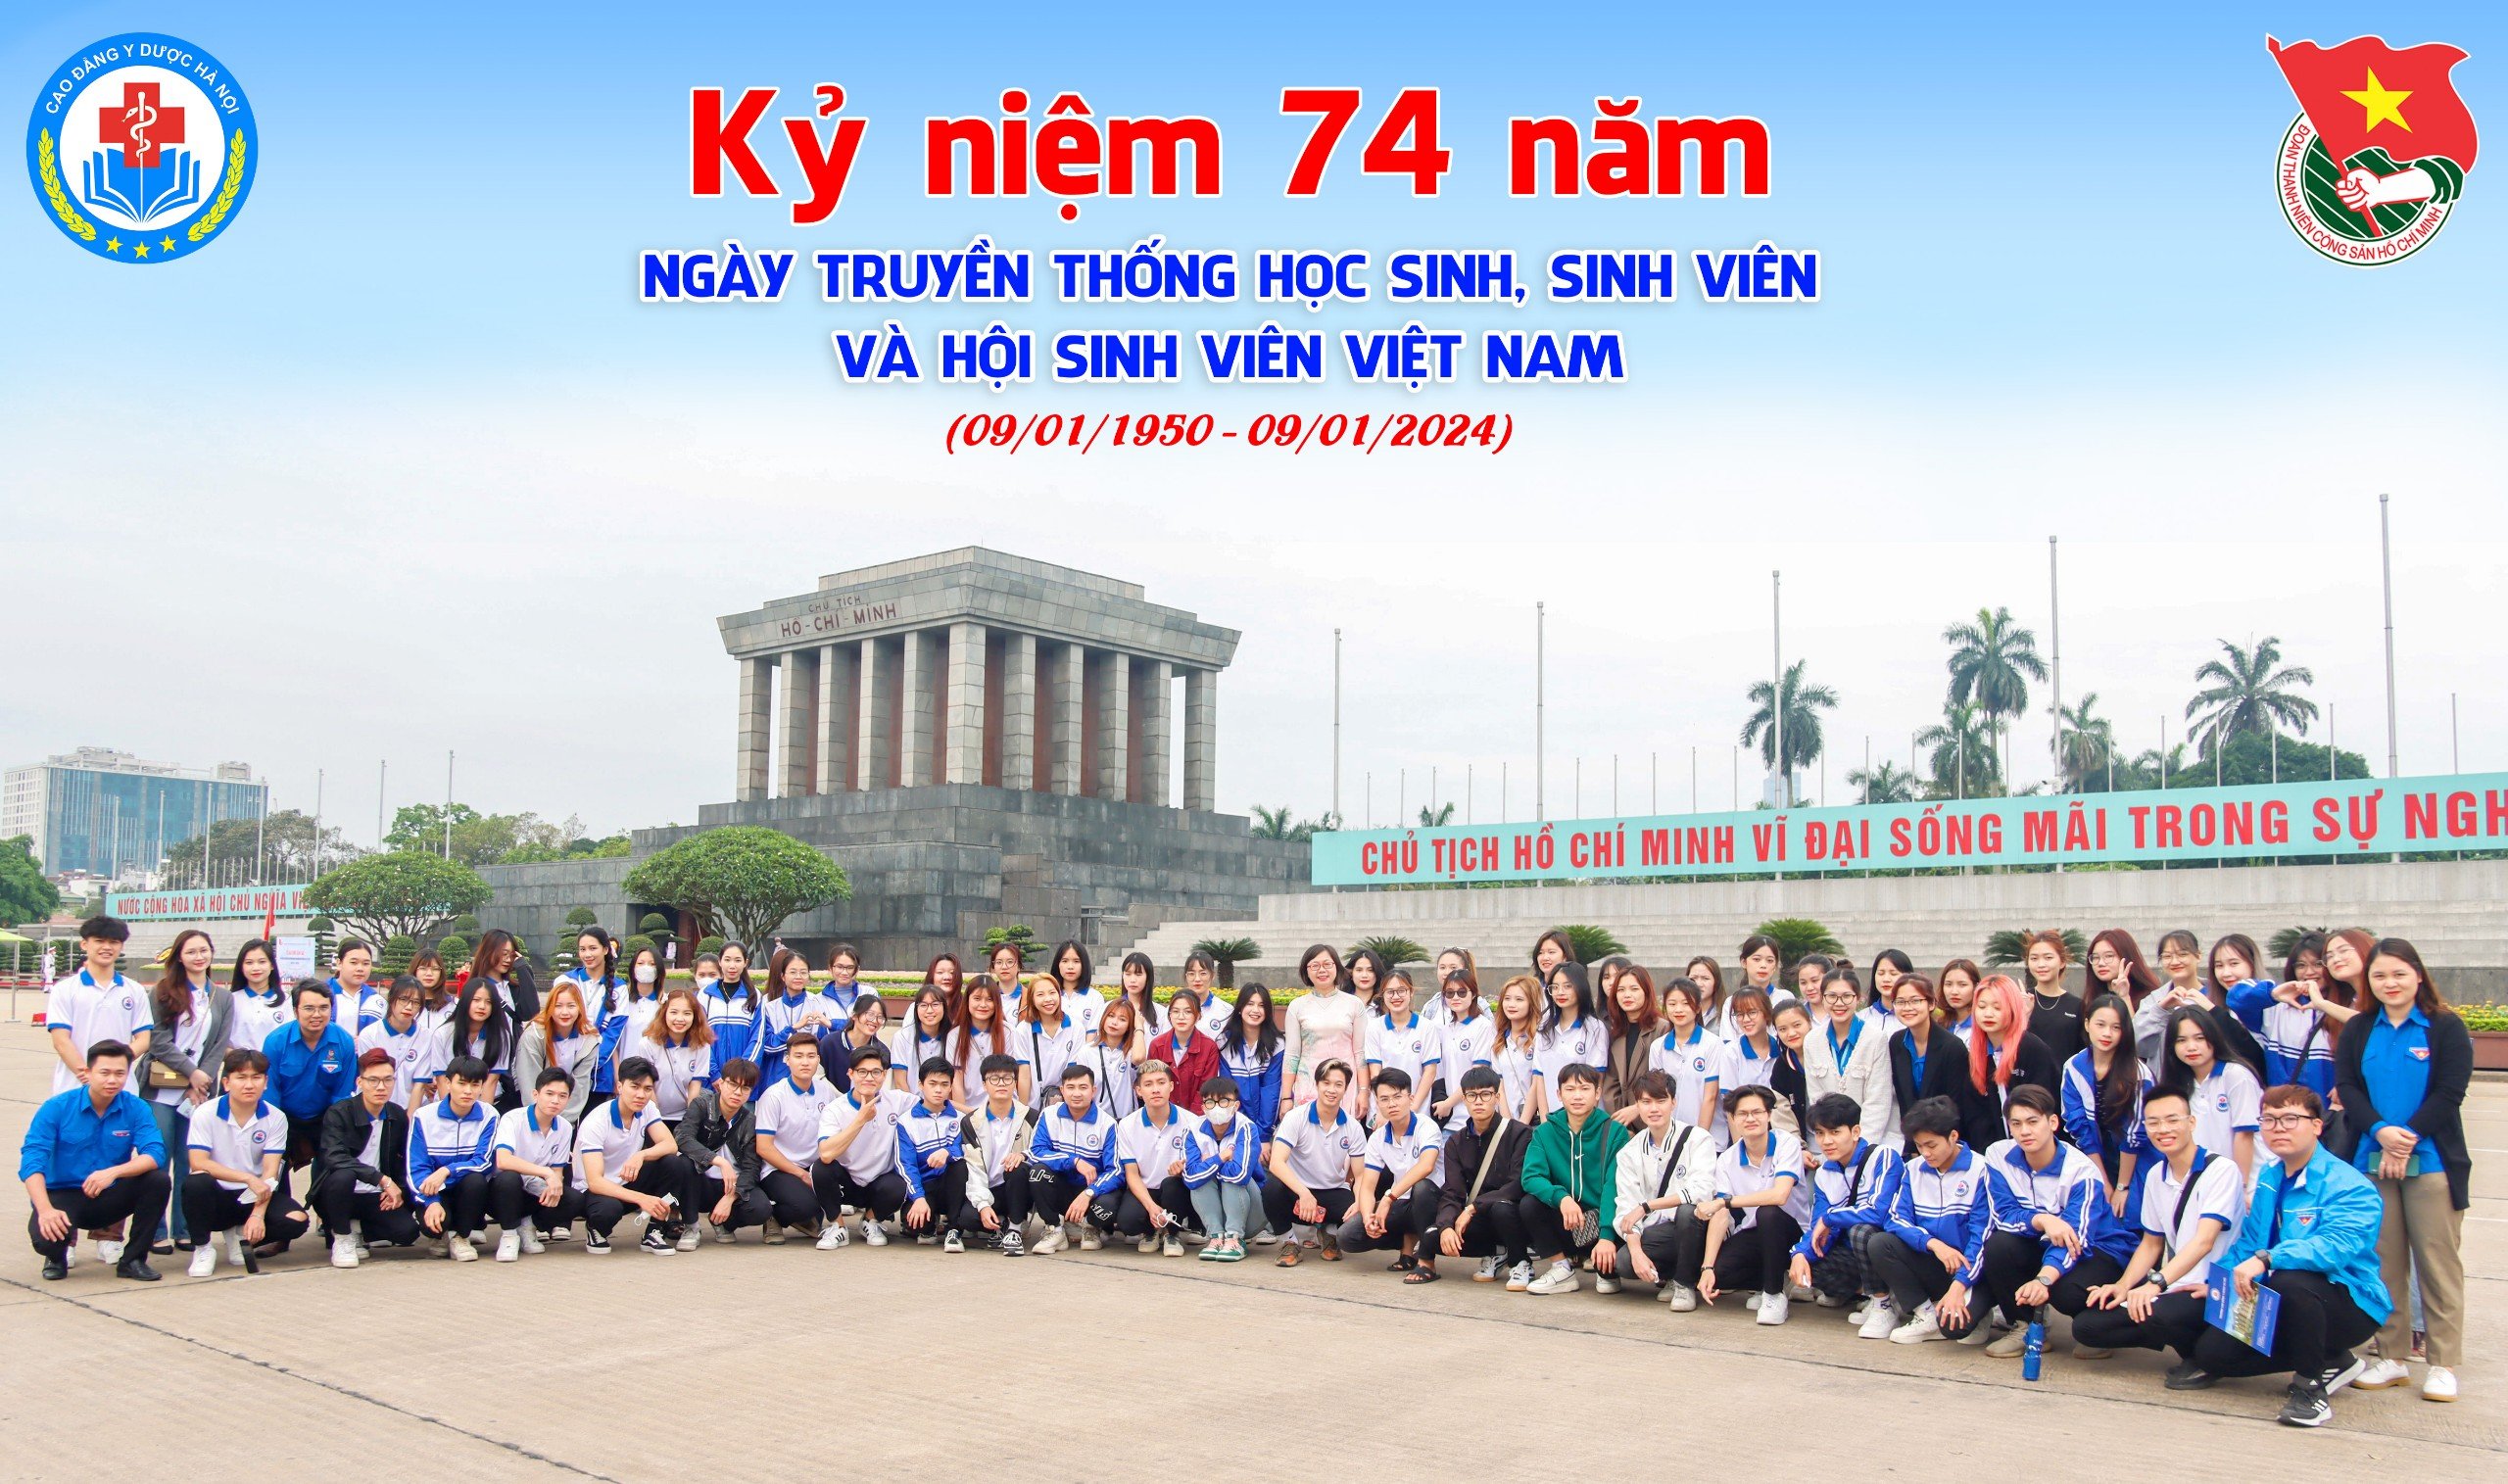 Vì sao ngày 9/1 hàng năm được chọn là Ngày truyền thống học sinh, sinh viên và Hội Sinh viên Việt Nam?